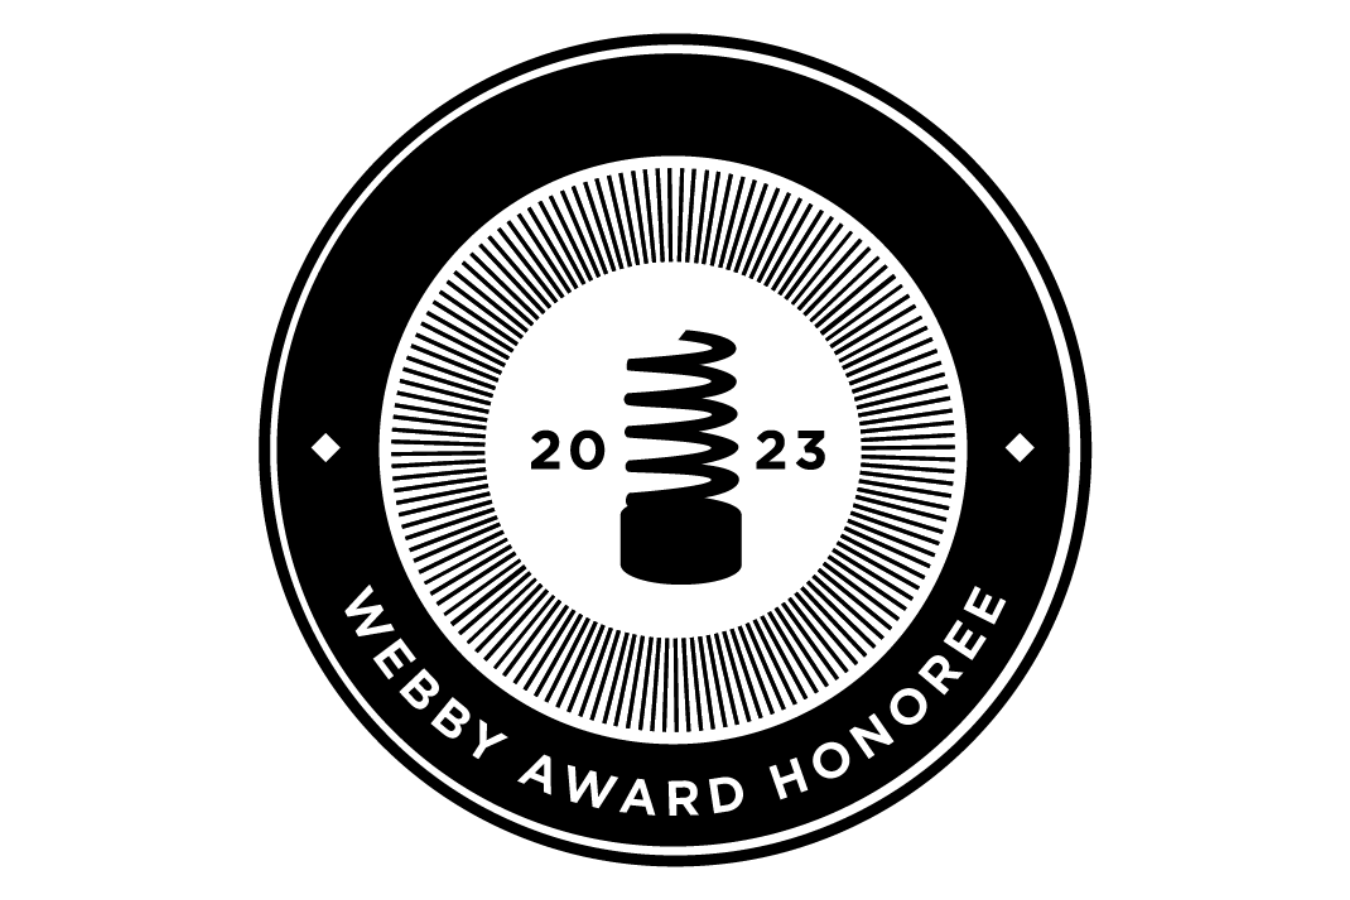 Webby Award Honoree 2023.